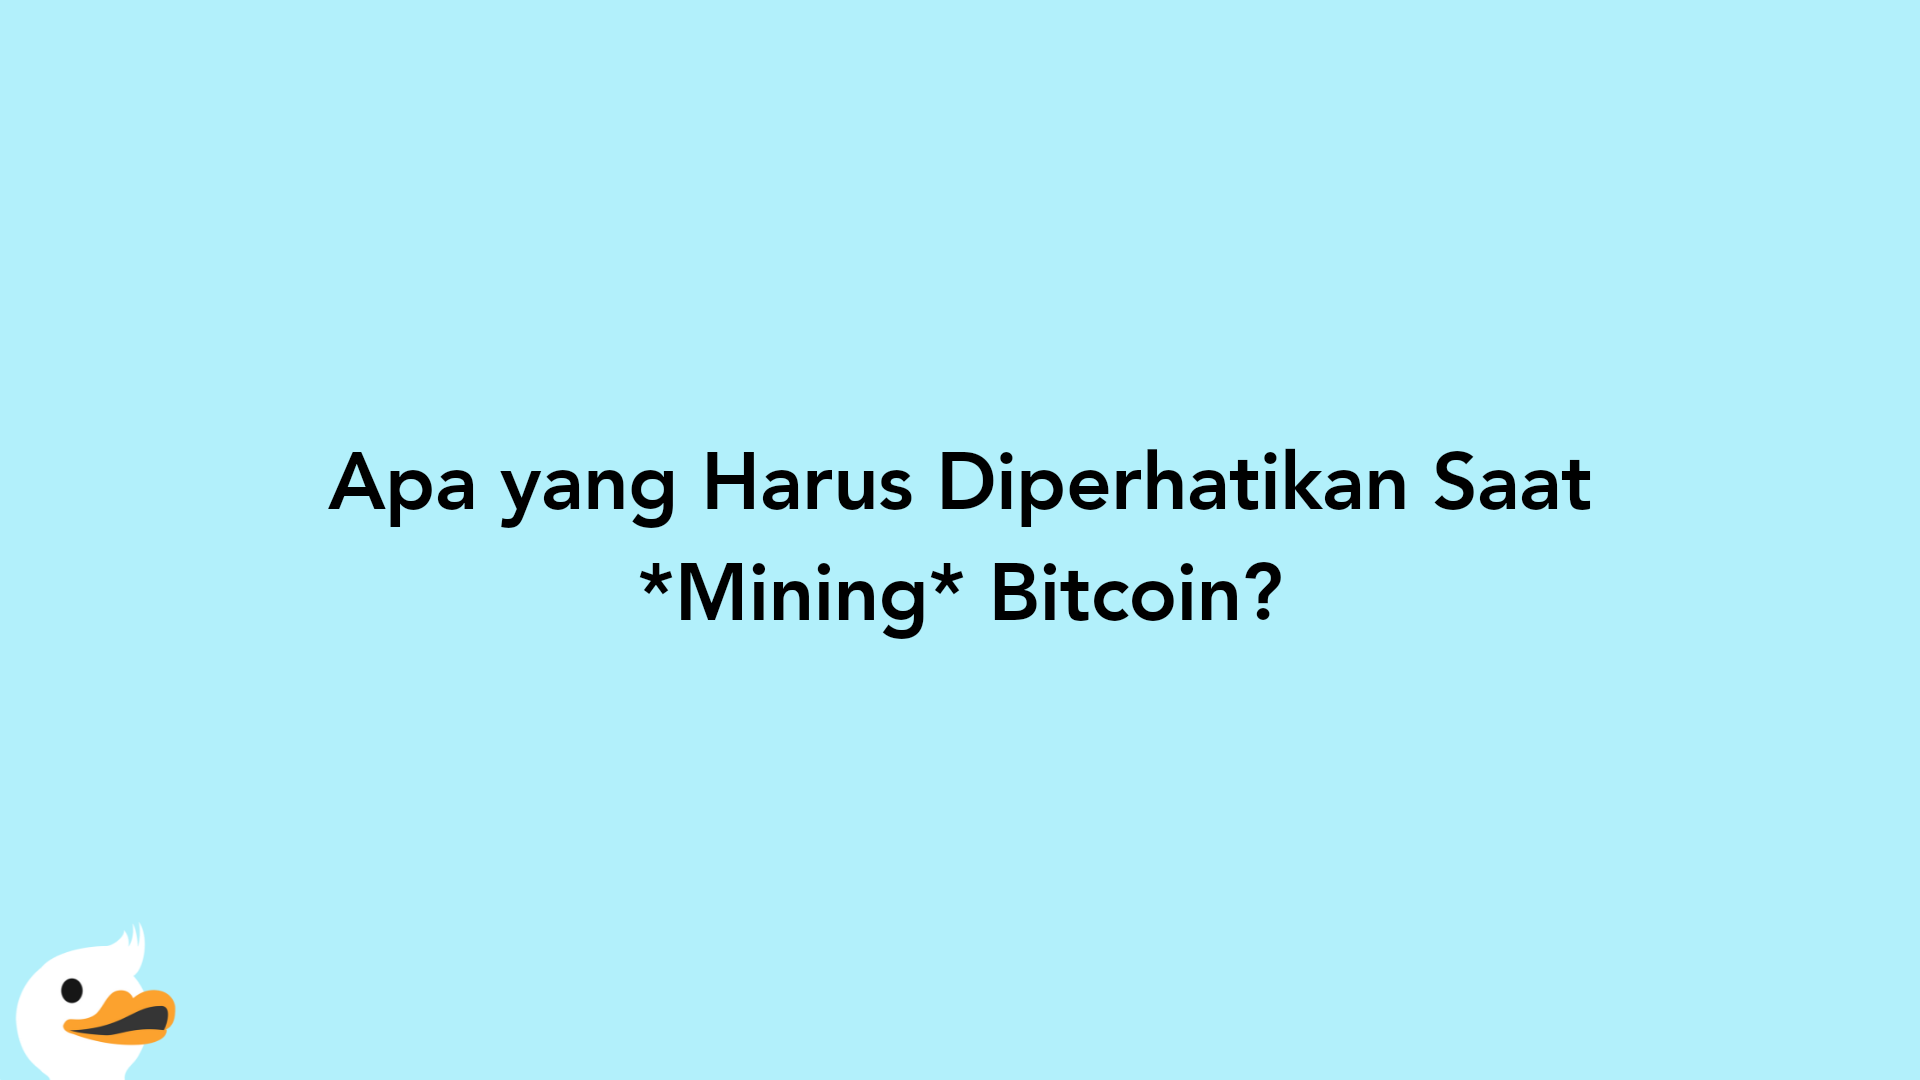 Apa yang Harus Diperhatikan Saat Mining Bitcoin?